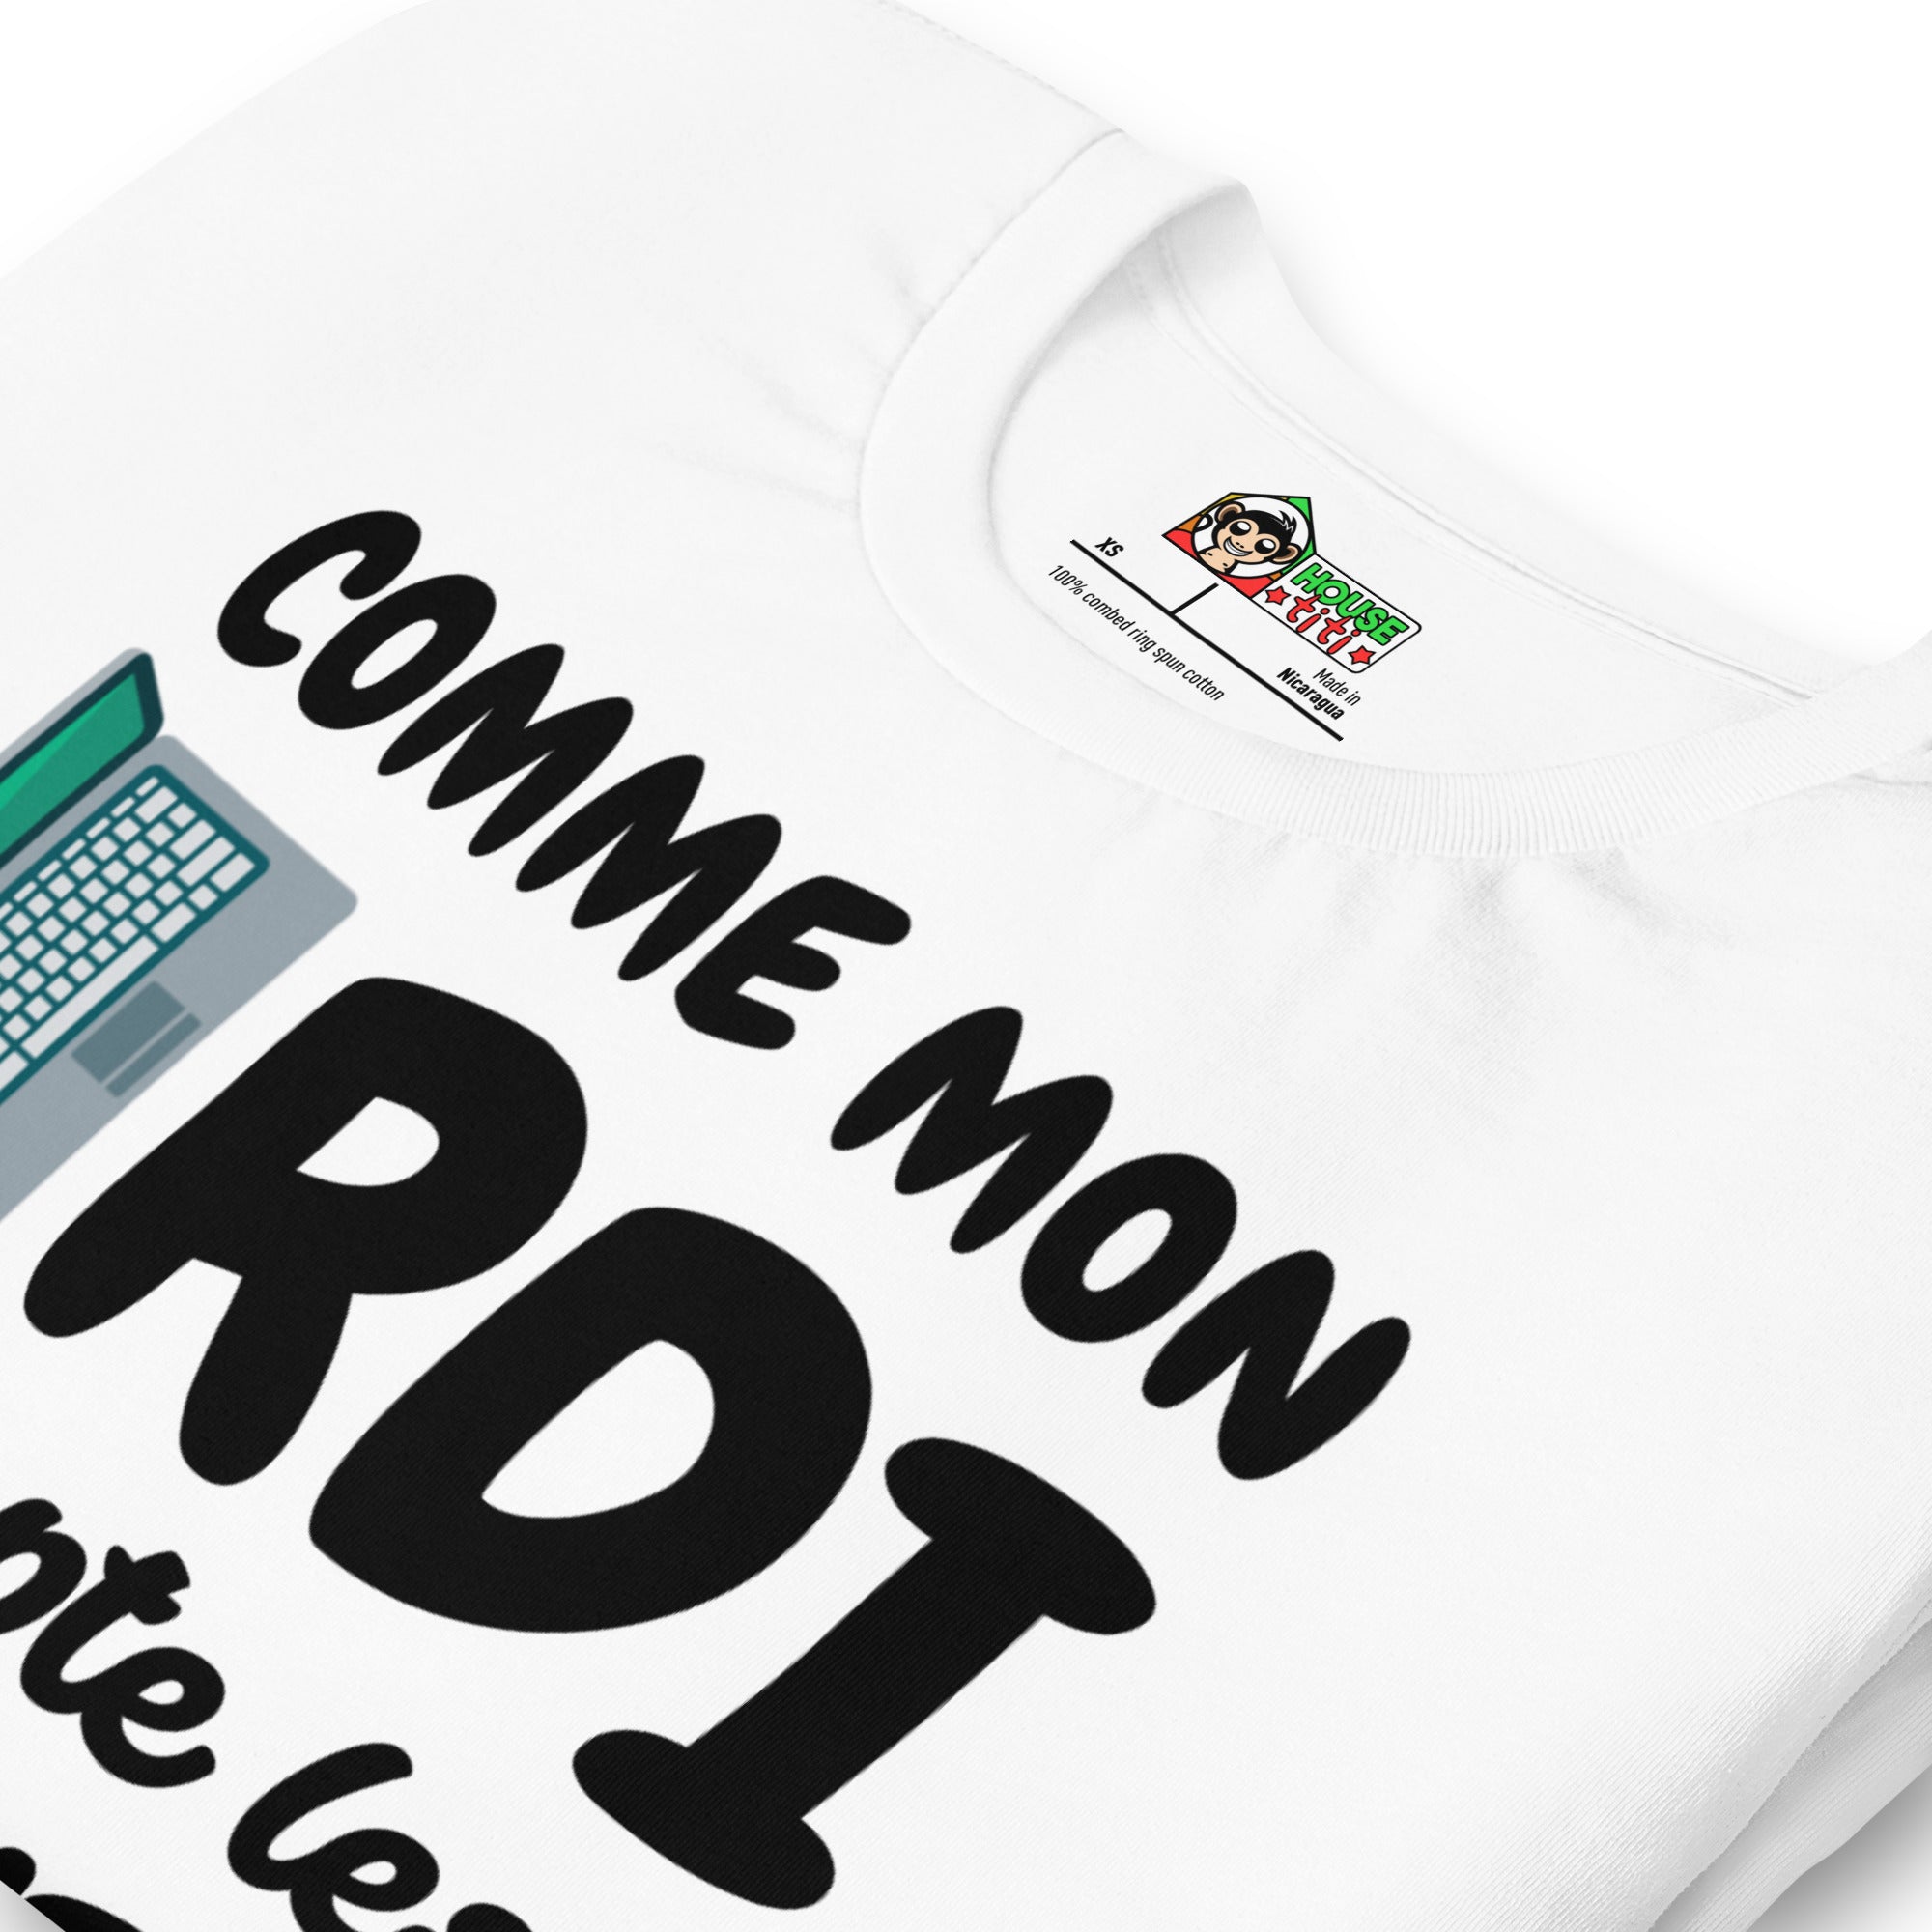 T-shirt unisexe Comme Mon Ordi (Lettrage foncé)